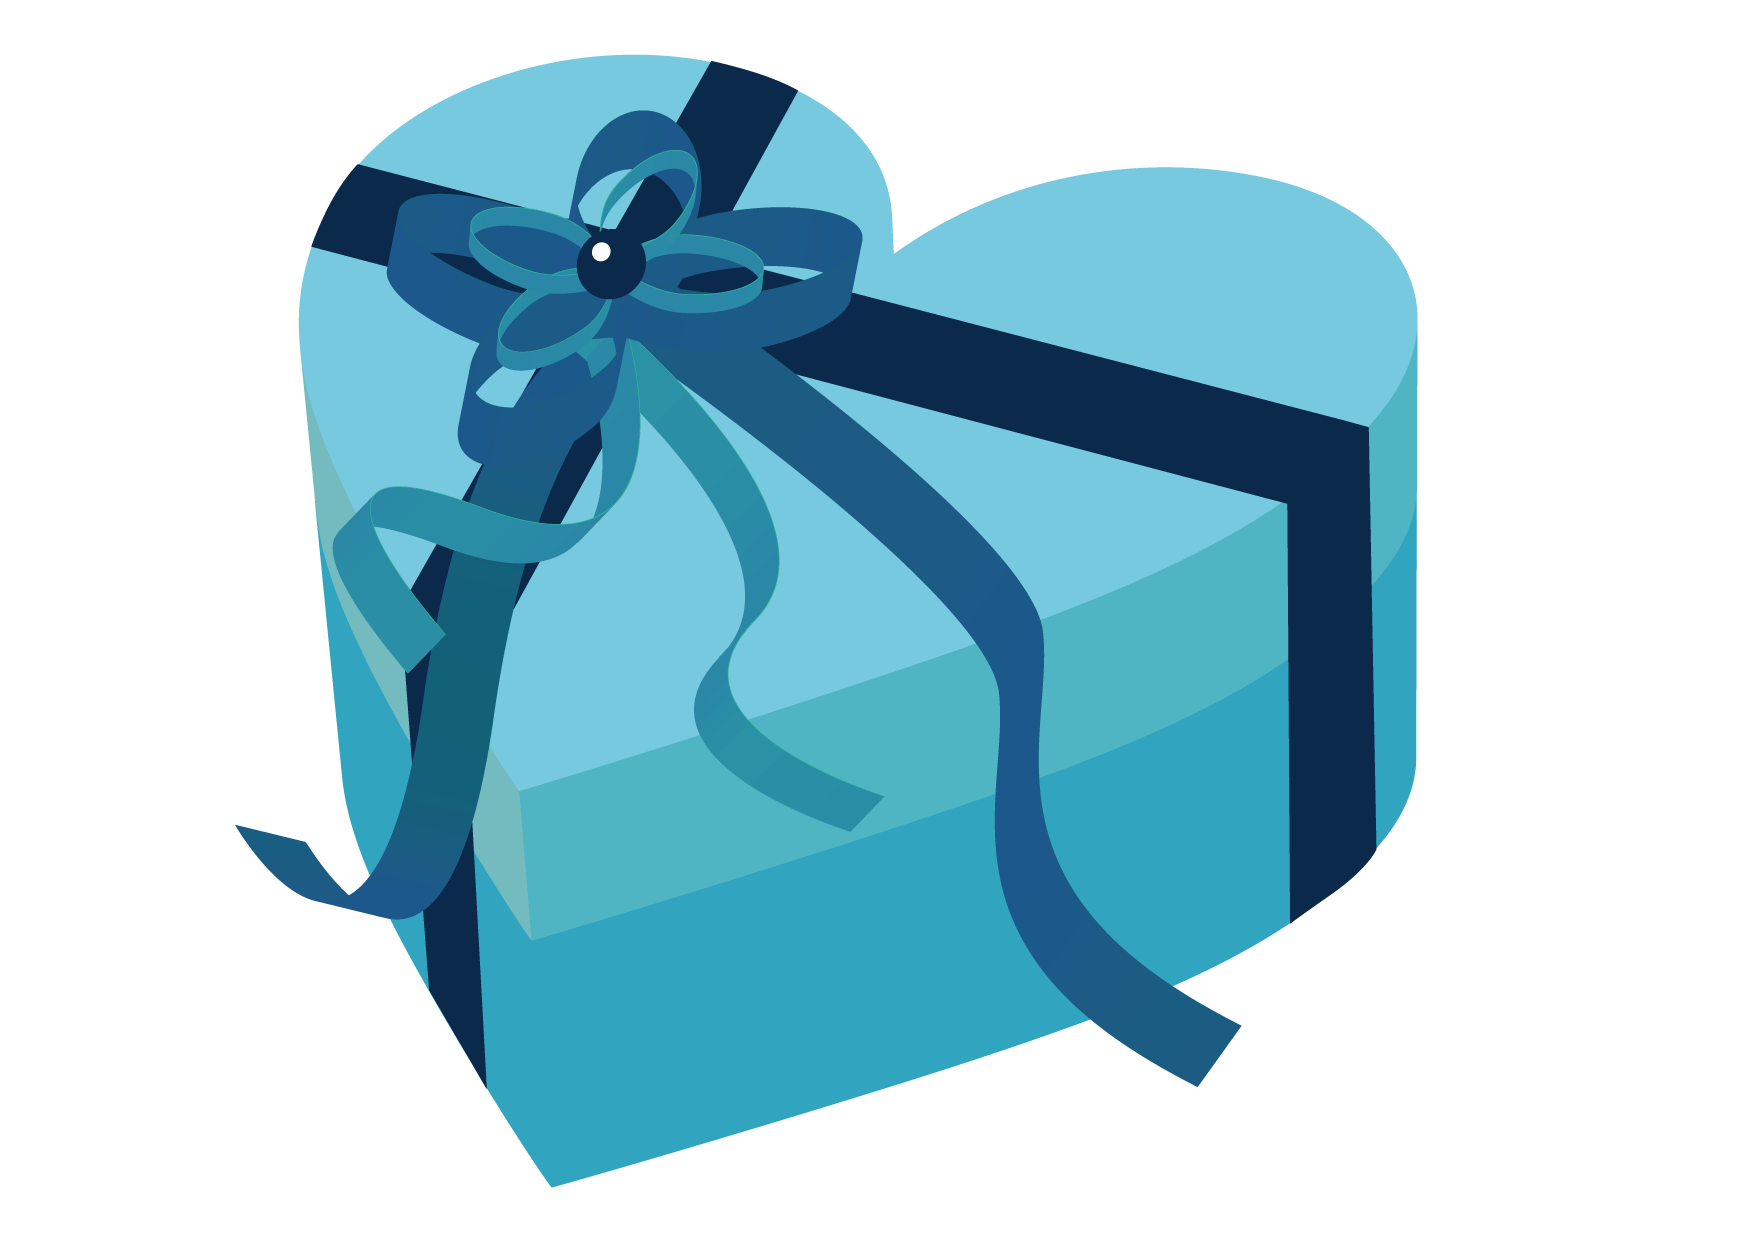 可愛いイラスト無料 バレンタイン ハート ブルー 箱 Free Illustration Valentine Heart Blue Box 公式 イラストダウンロード